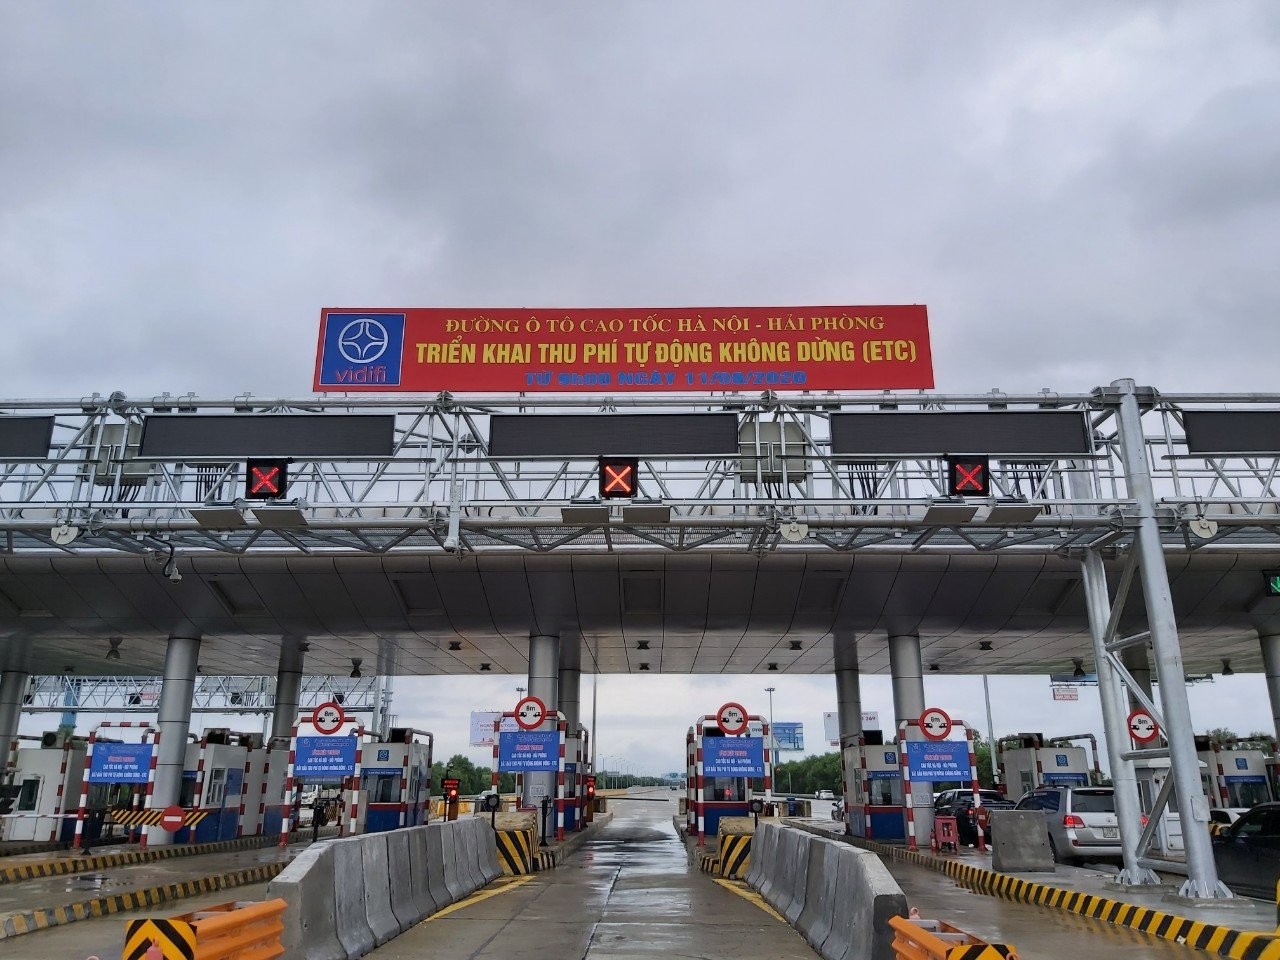 
Trạm thu phí tự động không dừng trên cao tốc Hà Nội - Hải Phòng.
